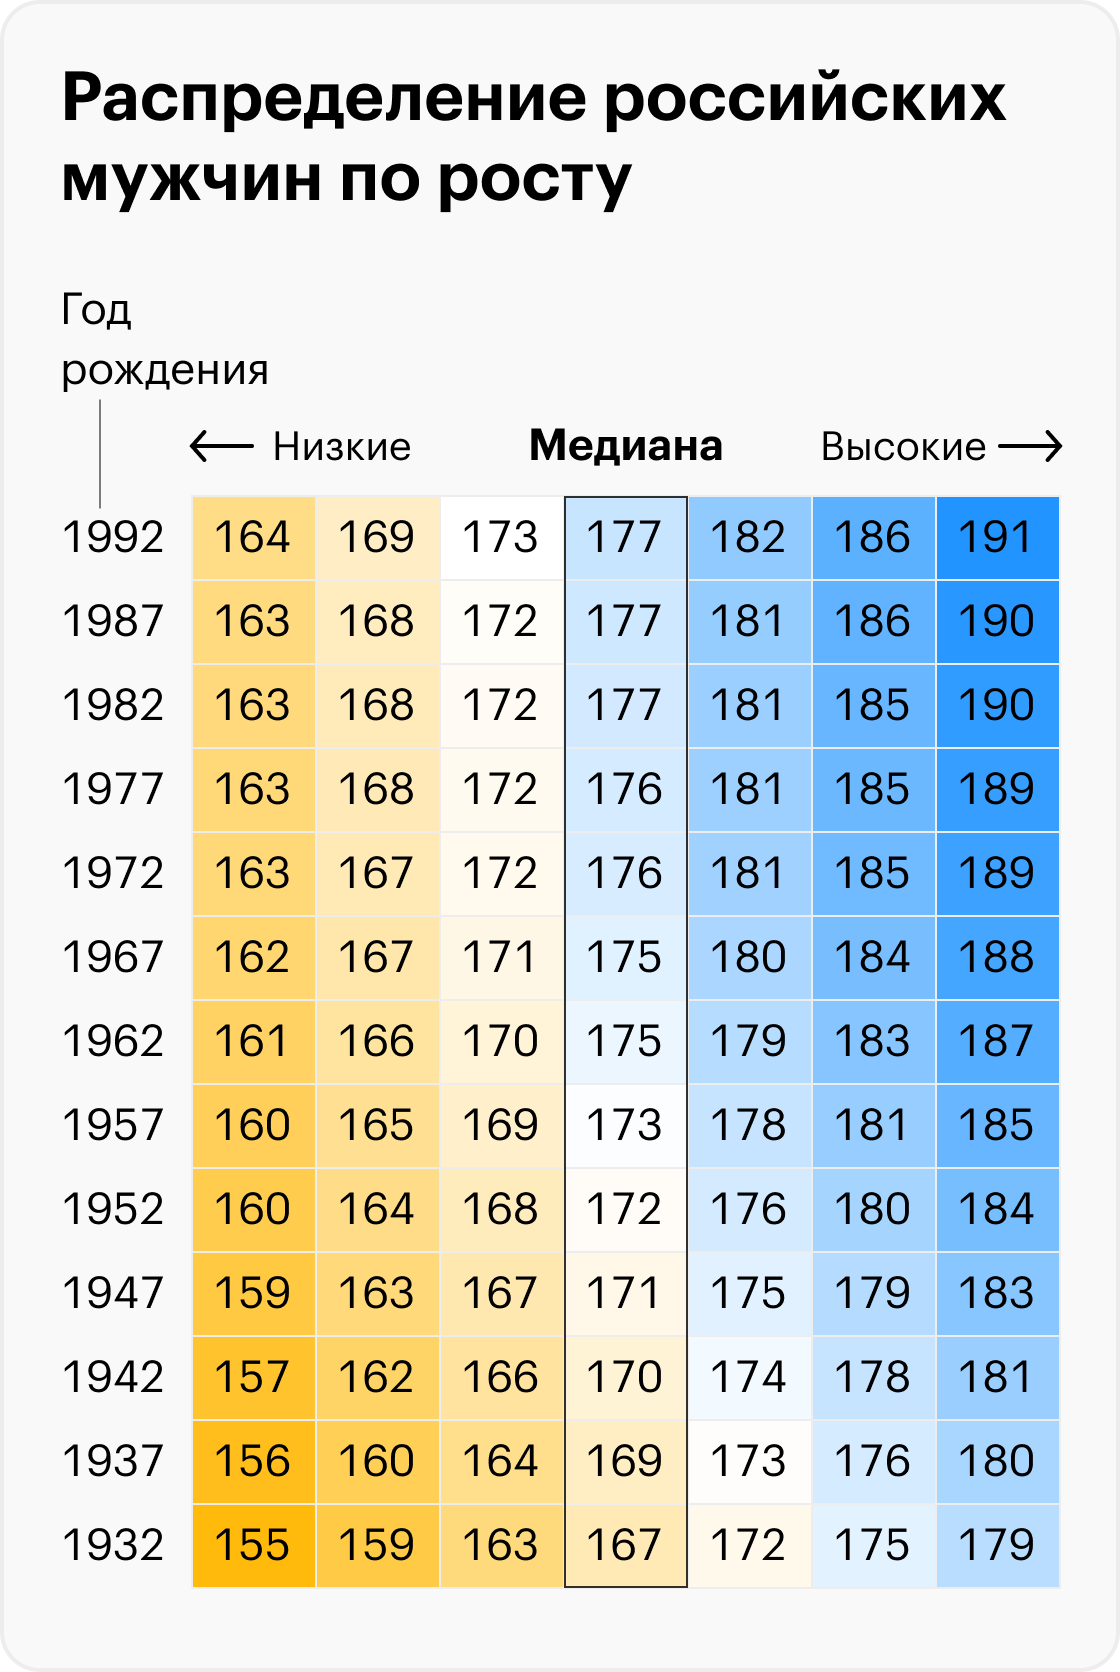 Источник: Биоимпедансное исследование состава тела населения России, 2014